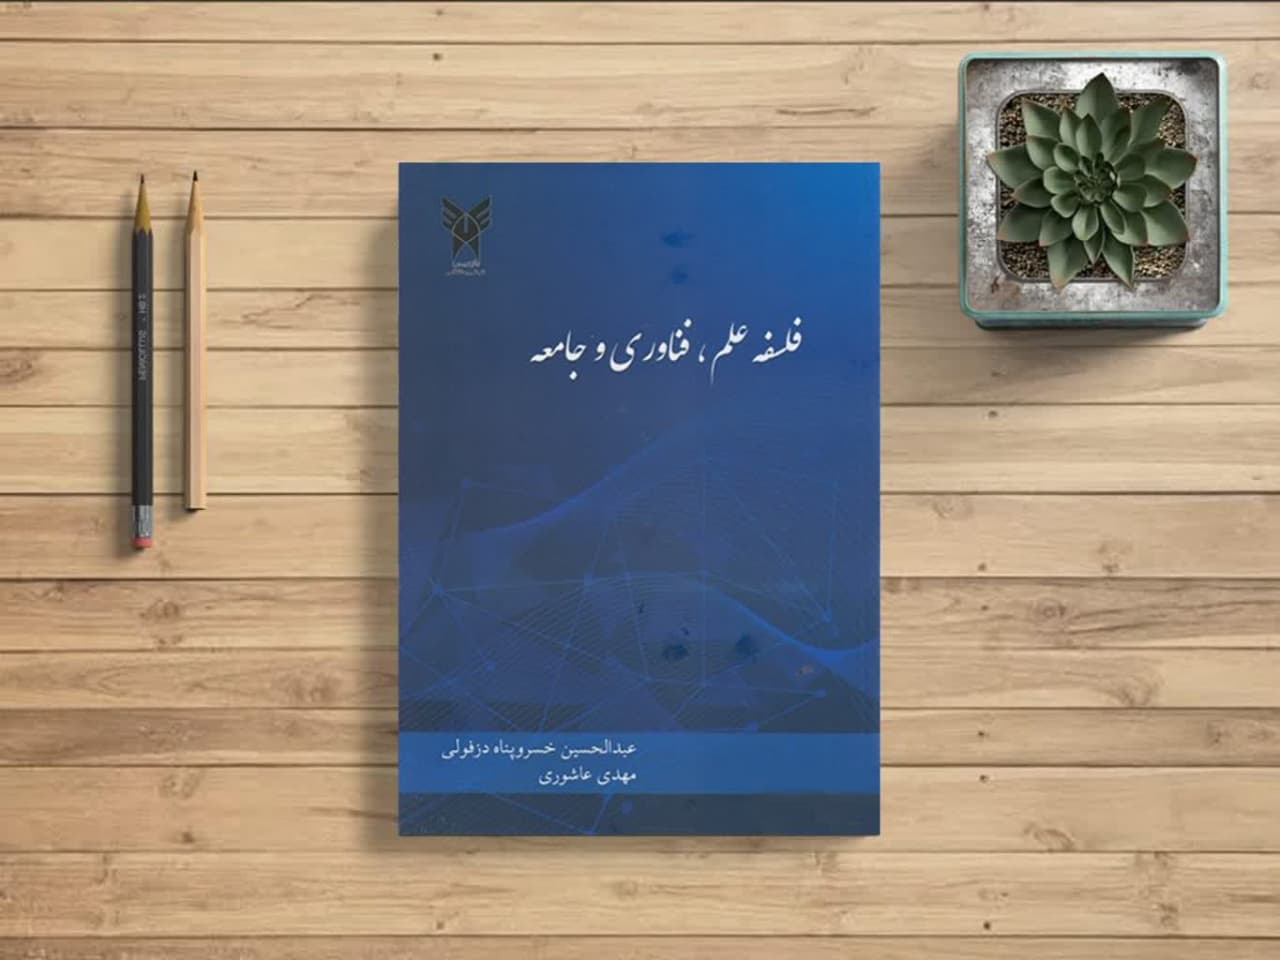 اولین کتاب کشور در معارف اسلامی با رویکرد حکمت اسلامی